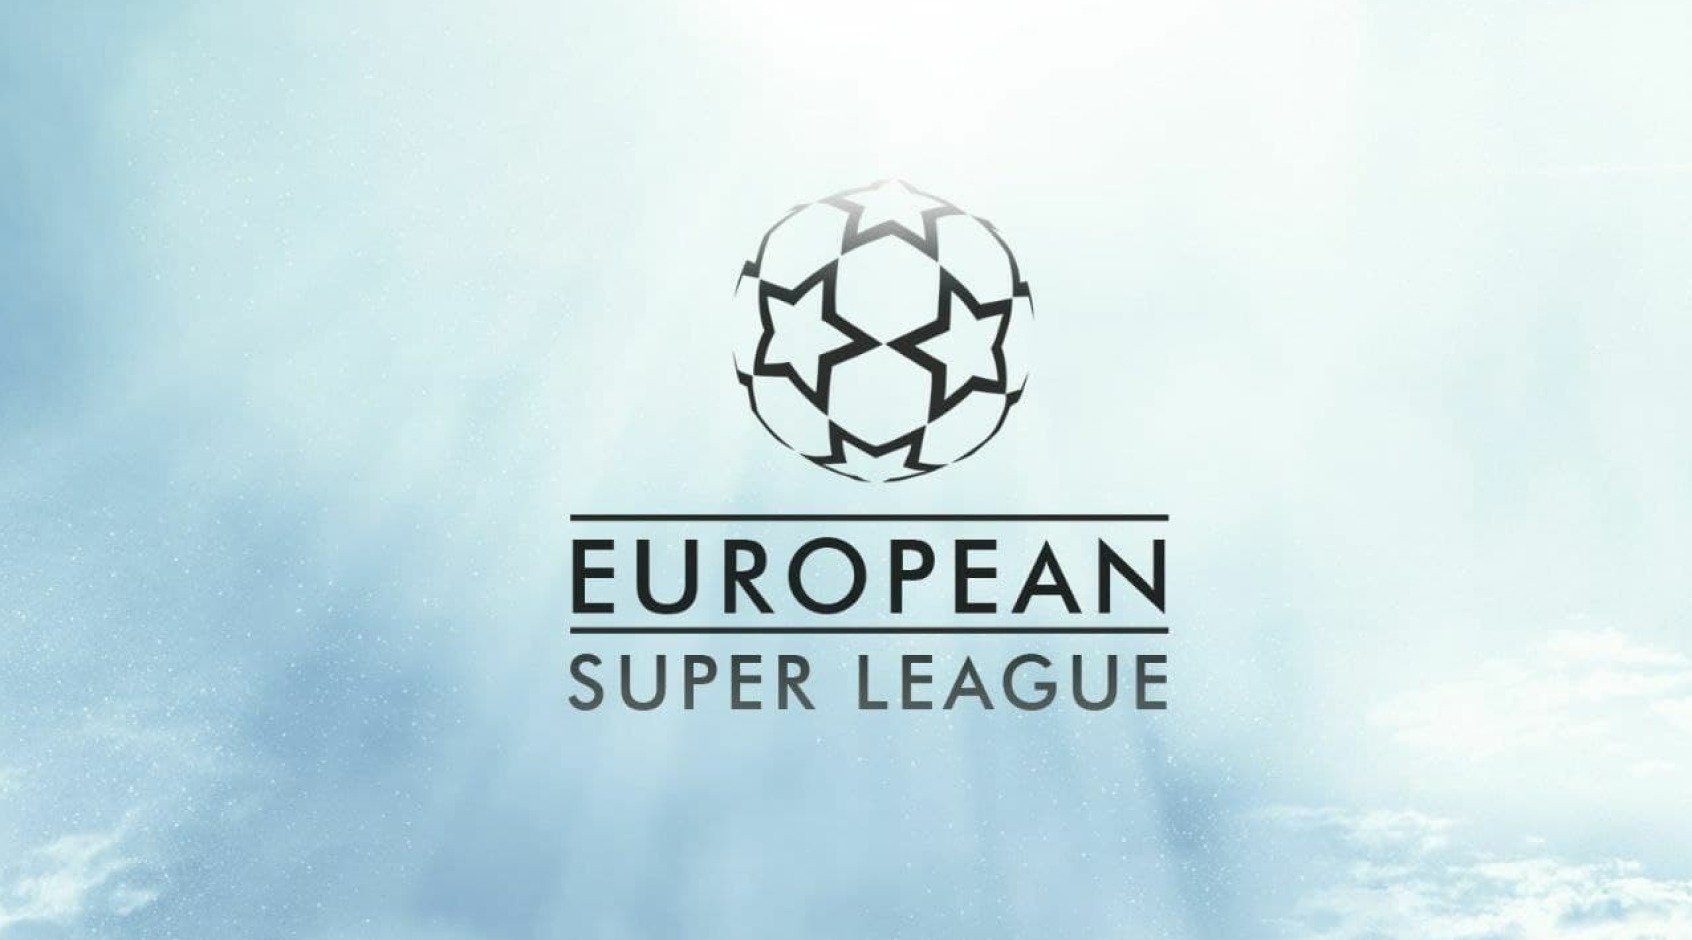 ТОП-12 клубов Европы создали Суперлигу вместо Лиги чемпионов! Это футбольный сепаратизм?